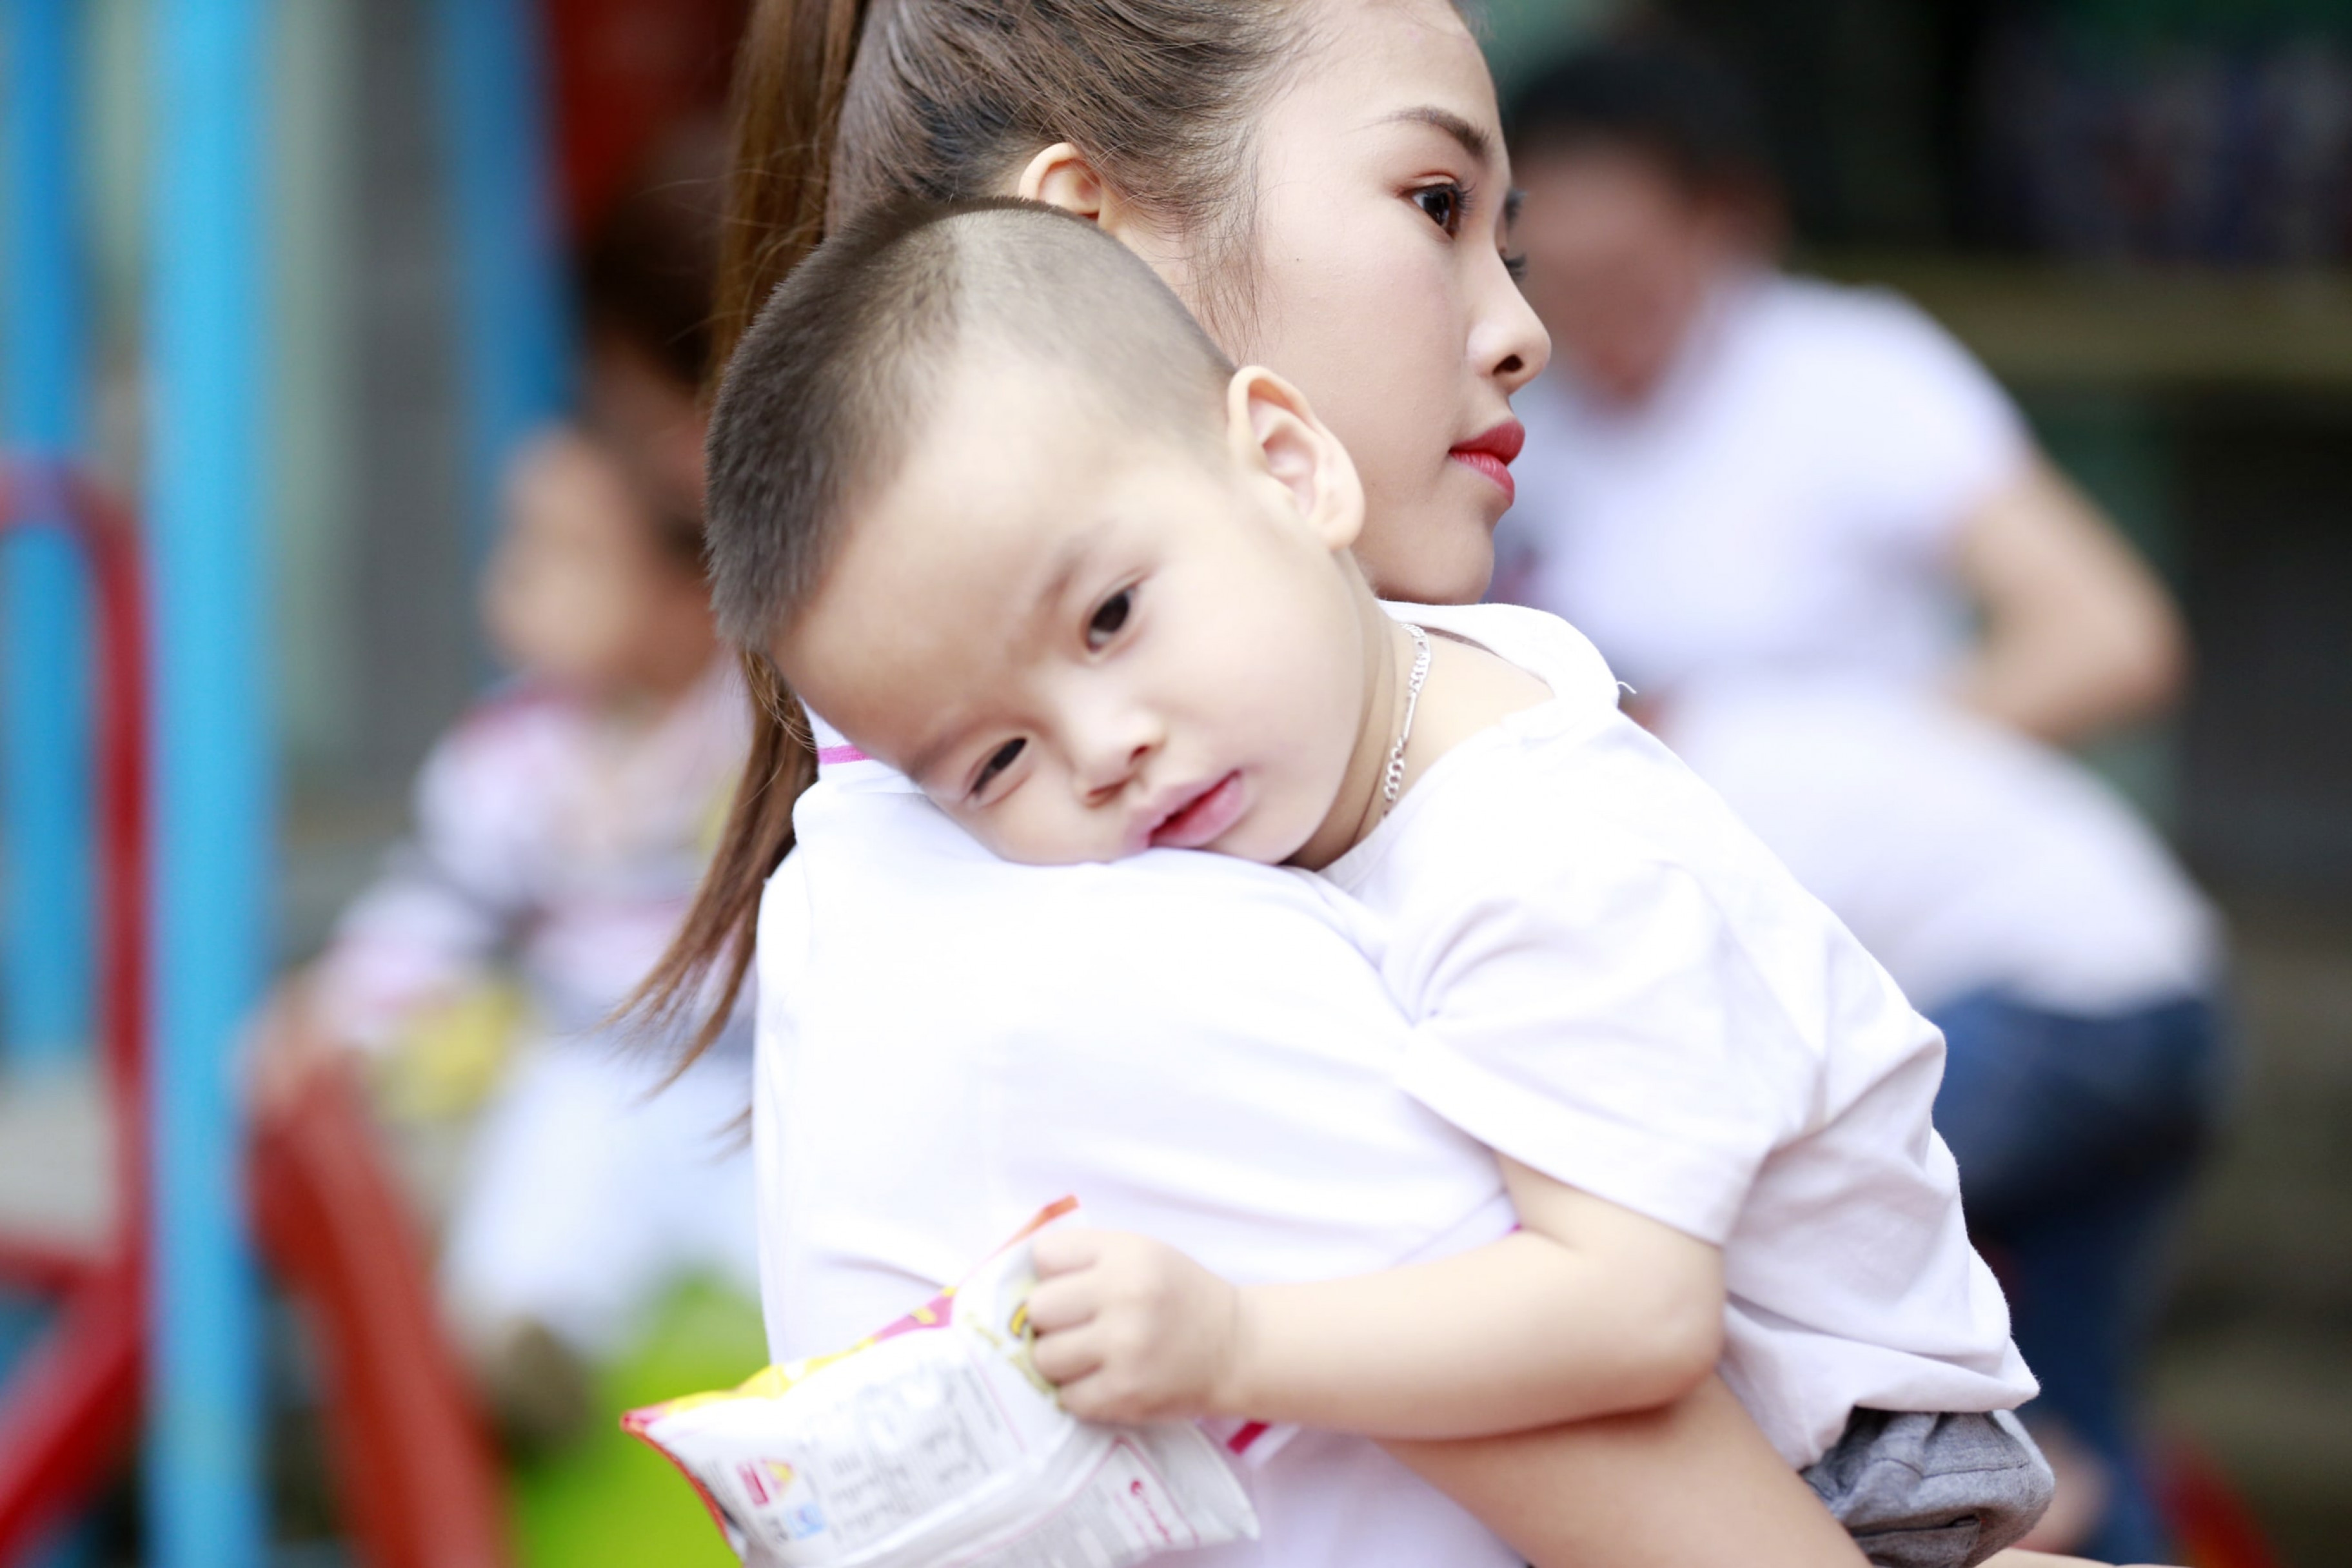 Thăm Trung tâm Cứu trợ cho trẻ em tật nguyền Thuận Thành Bắc Ninh, các người đẹp đều rất xúc động và mong muốn được chia sẻ. Đây là trung tâm nhận chữa bệnh miễn phí cho các trẻ em tật nguyền bằng phương pháp Đông y. 